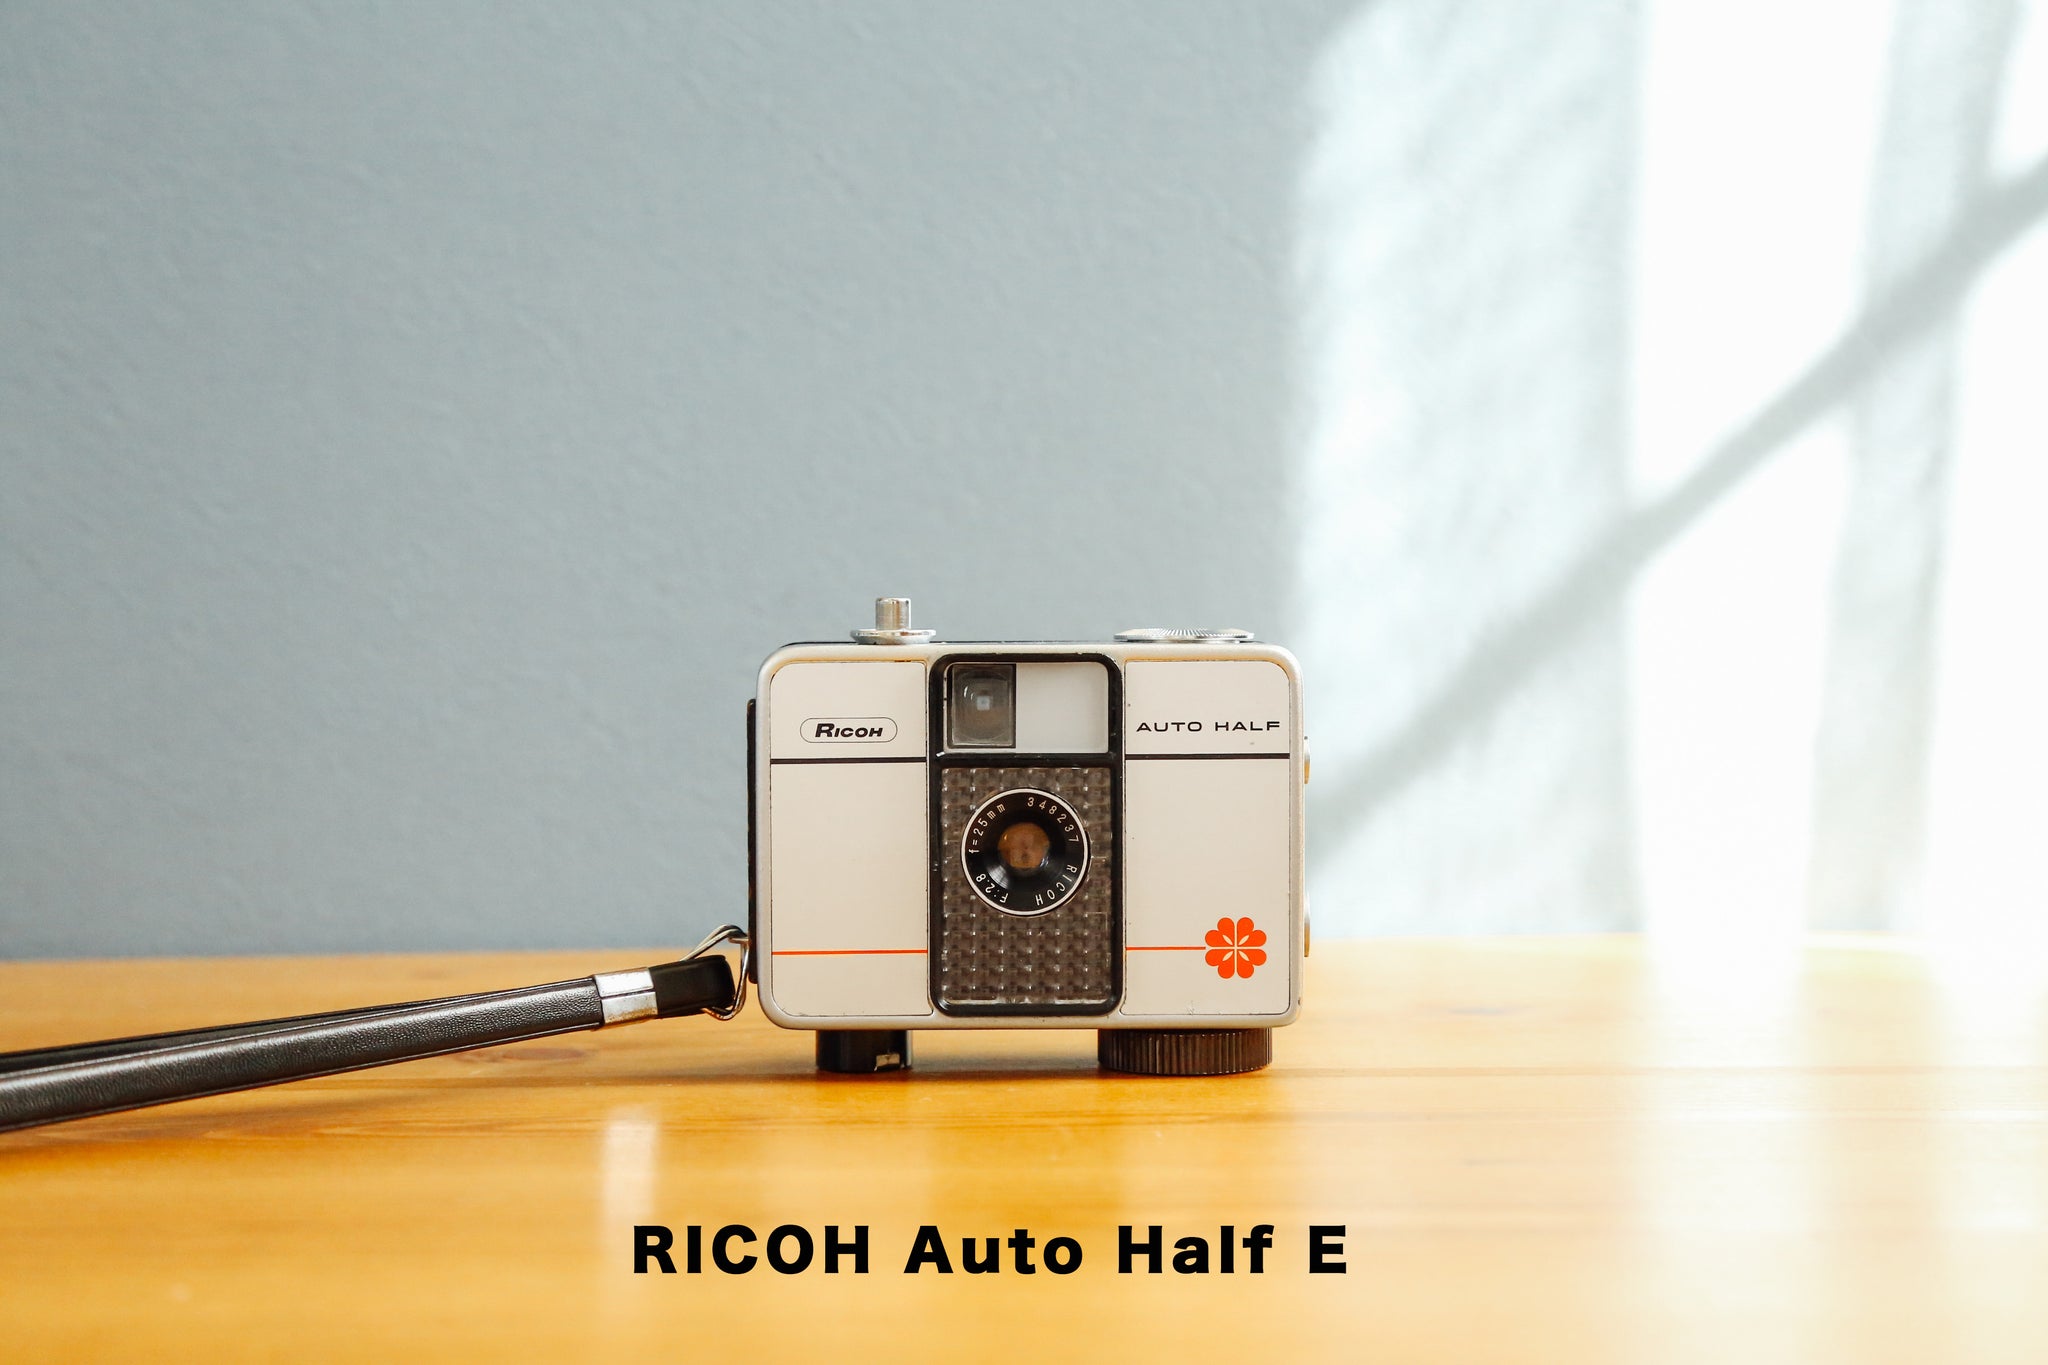 【整備品・試写あり】RICOH AUTO HALF E2 ランボルギーニ裏蓋内側劣化モルトによる錆腐食